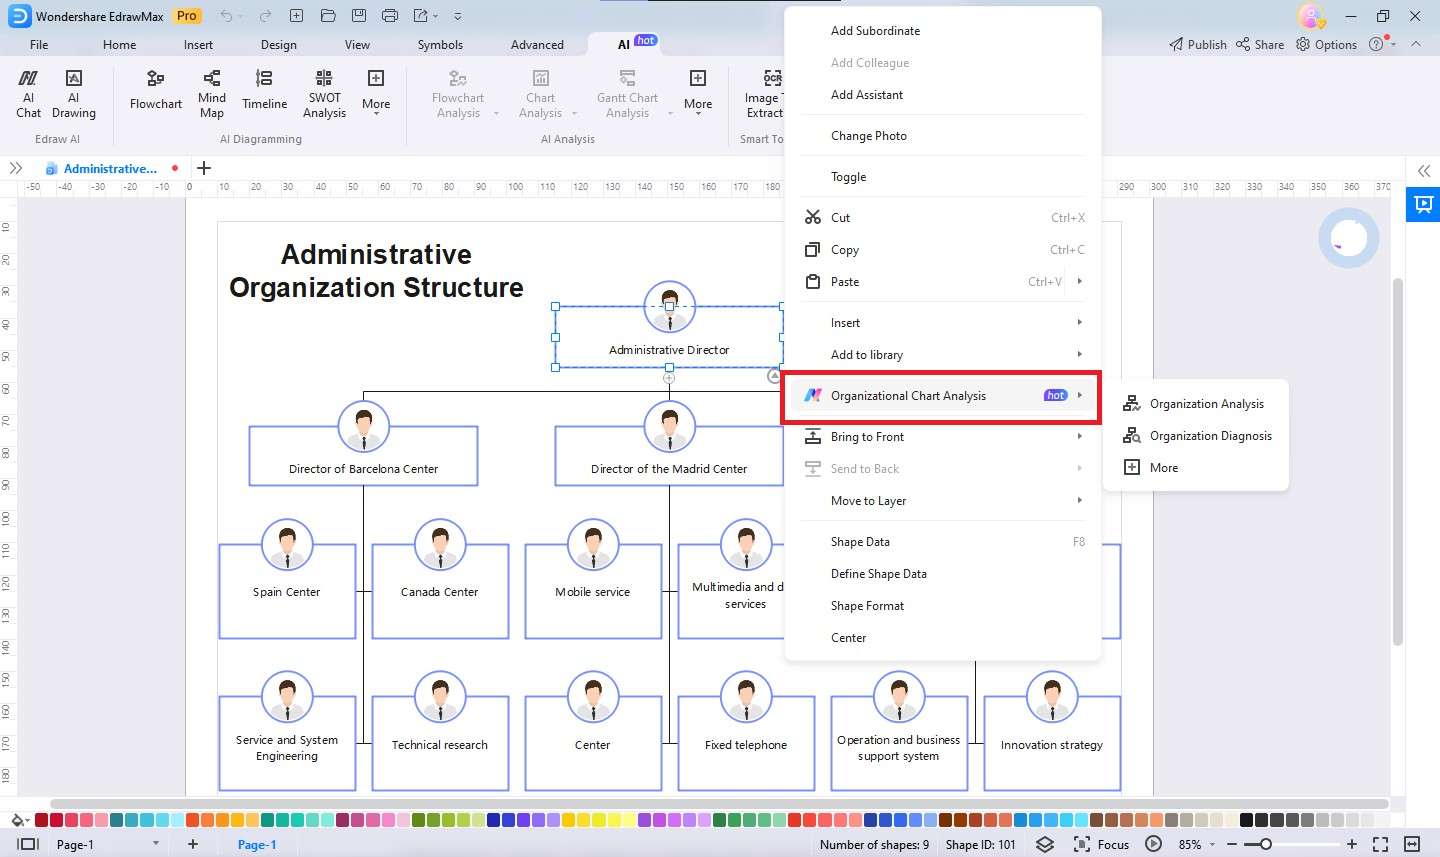 organizational chart analysis 02